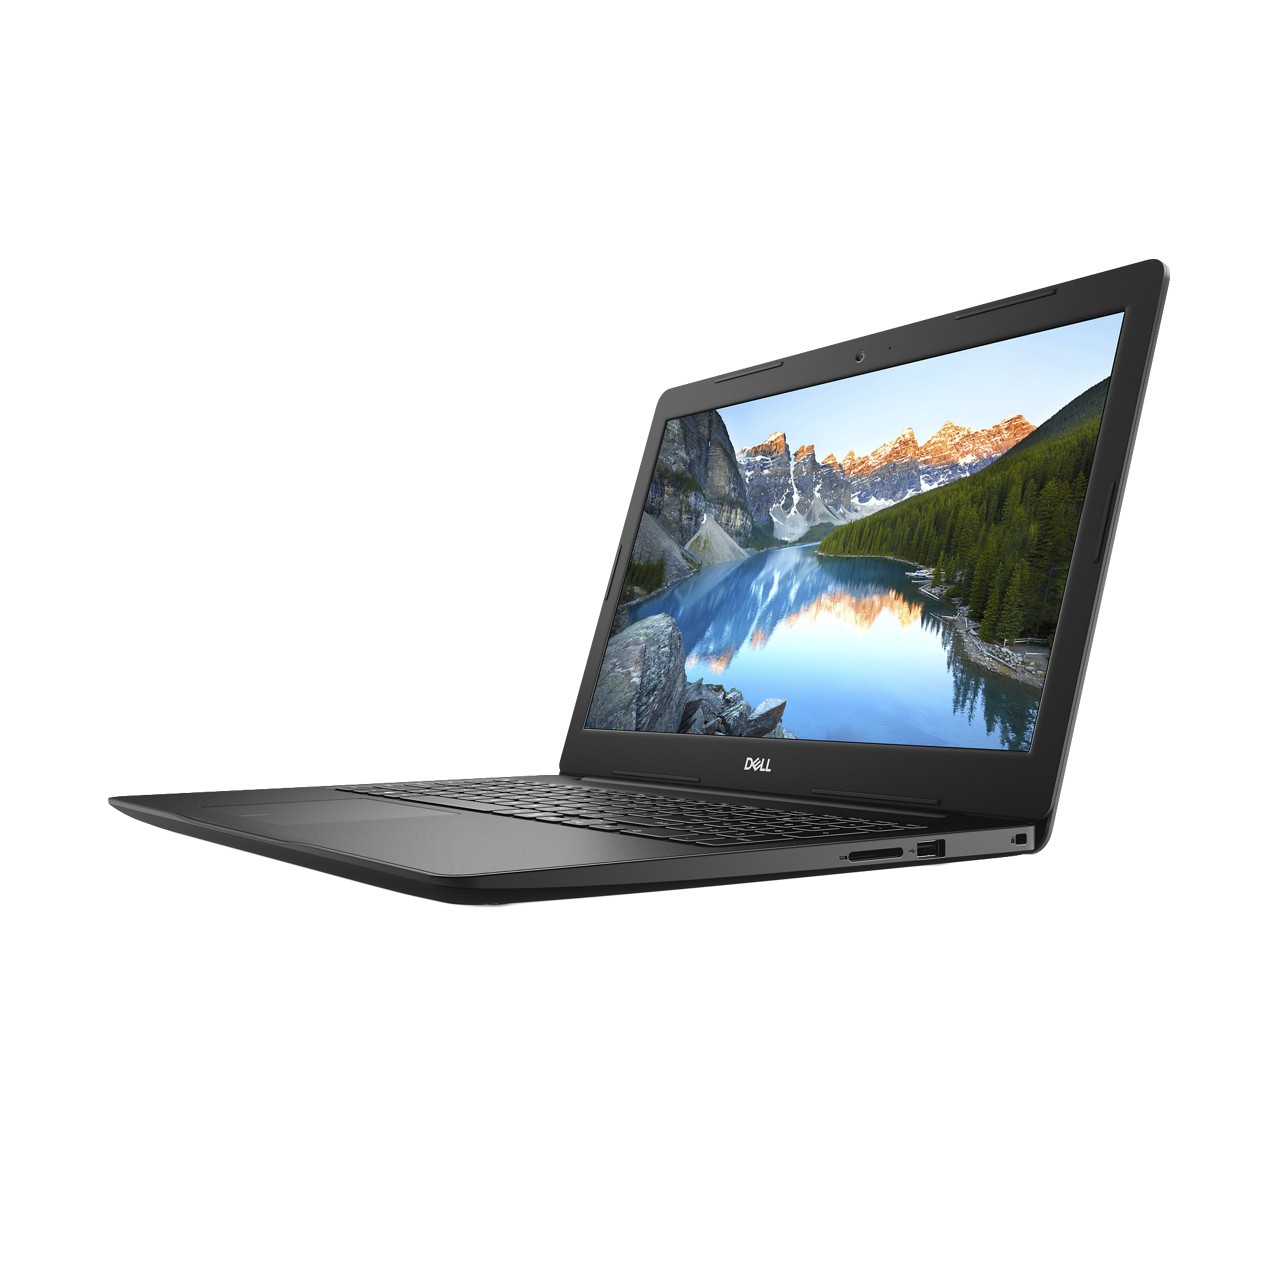 Notebook Dell Inspiron 3584 Core I3 8130u Memoria 4gb Ssd 128gb Tela Led 15.6' Hd Windows 10 Home 